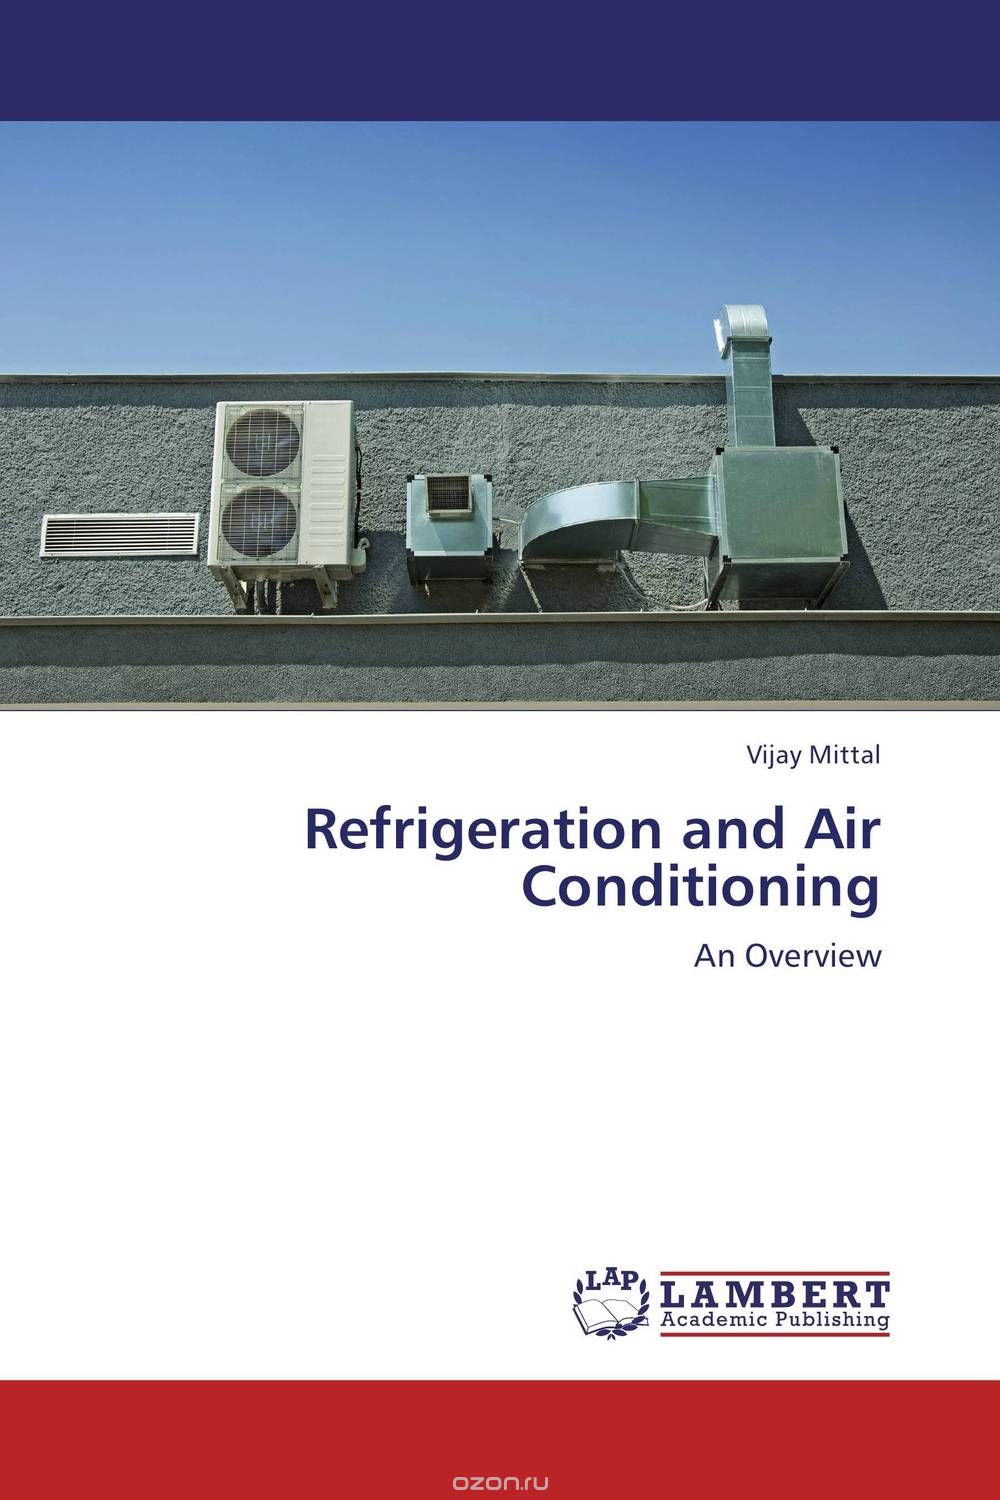 Скачать книгу "Refrigeration and Air Conditioning"